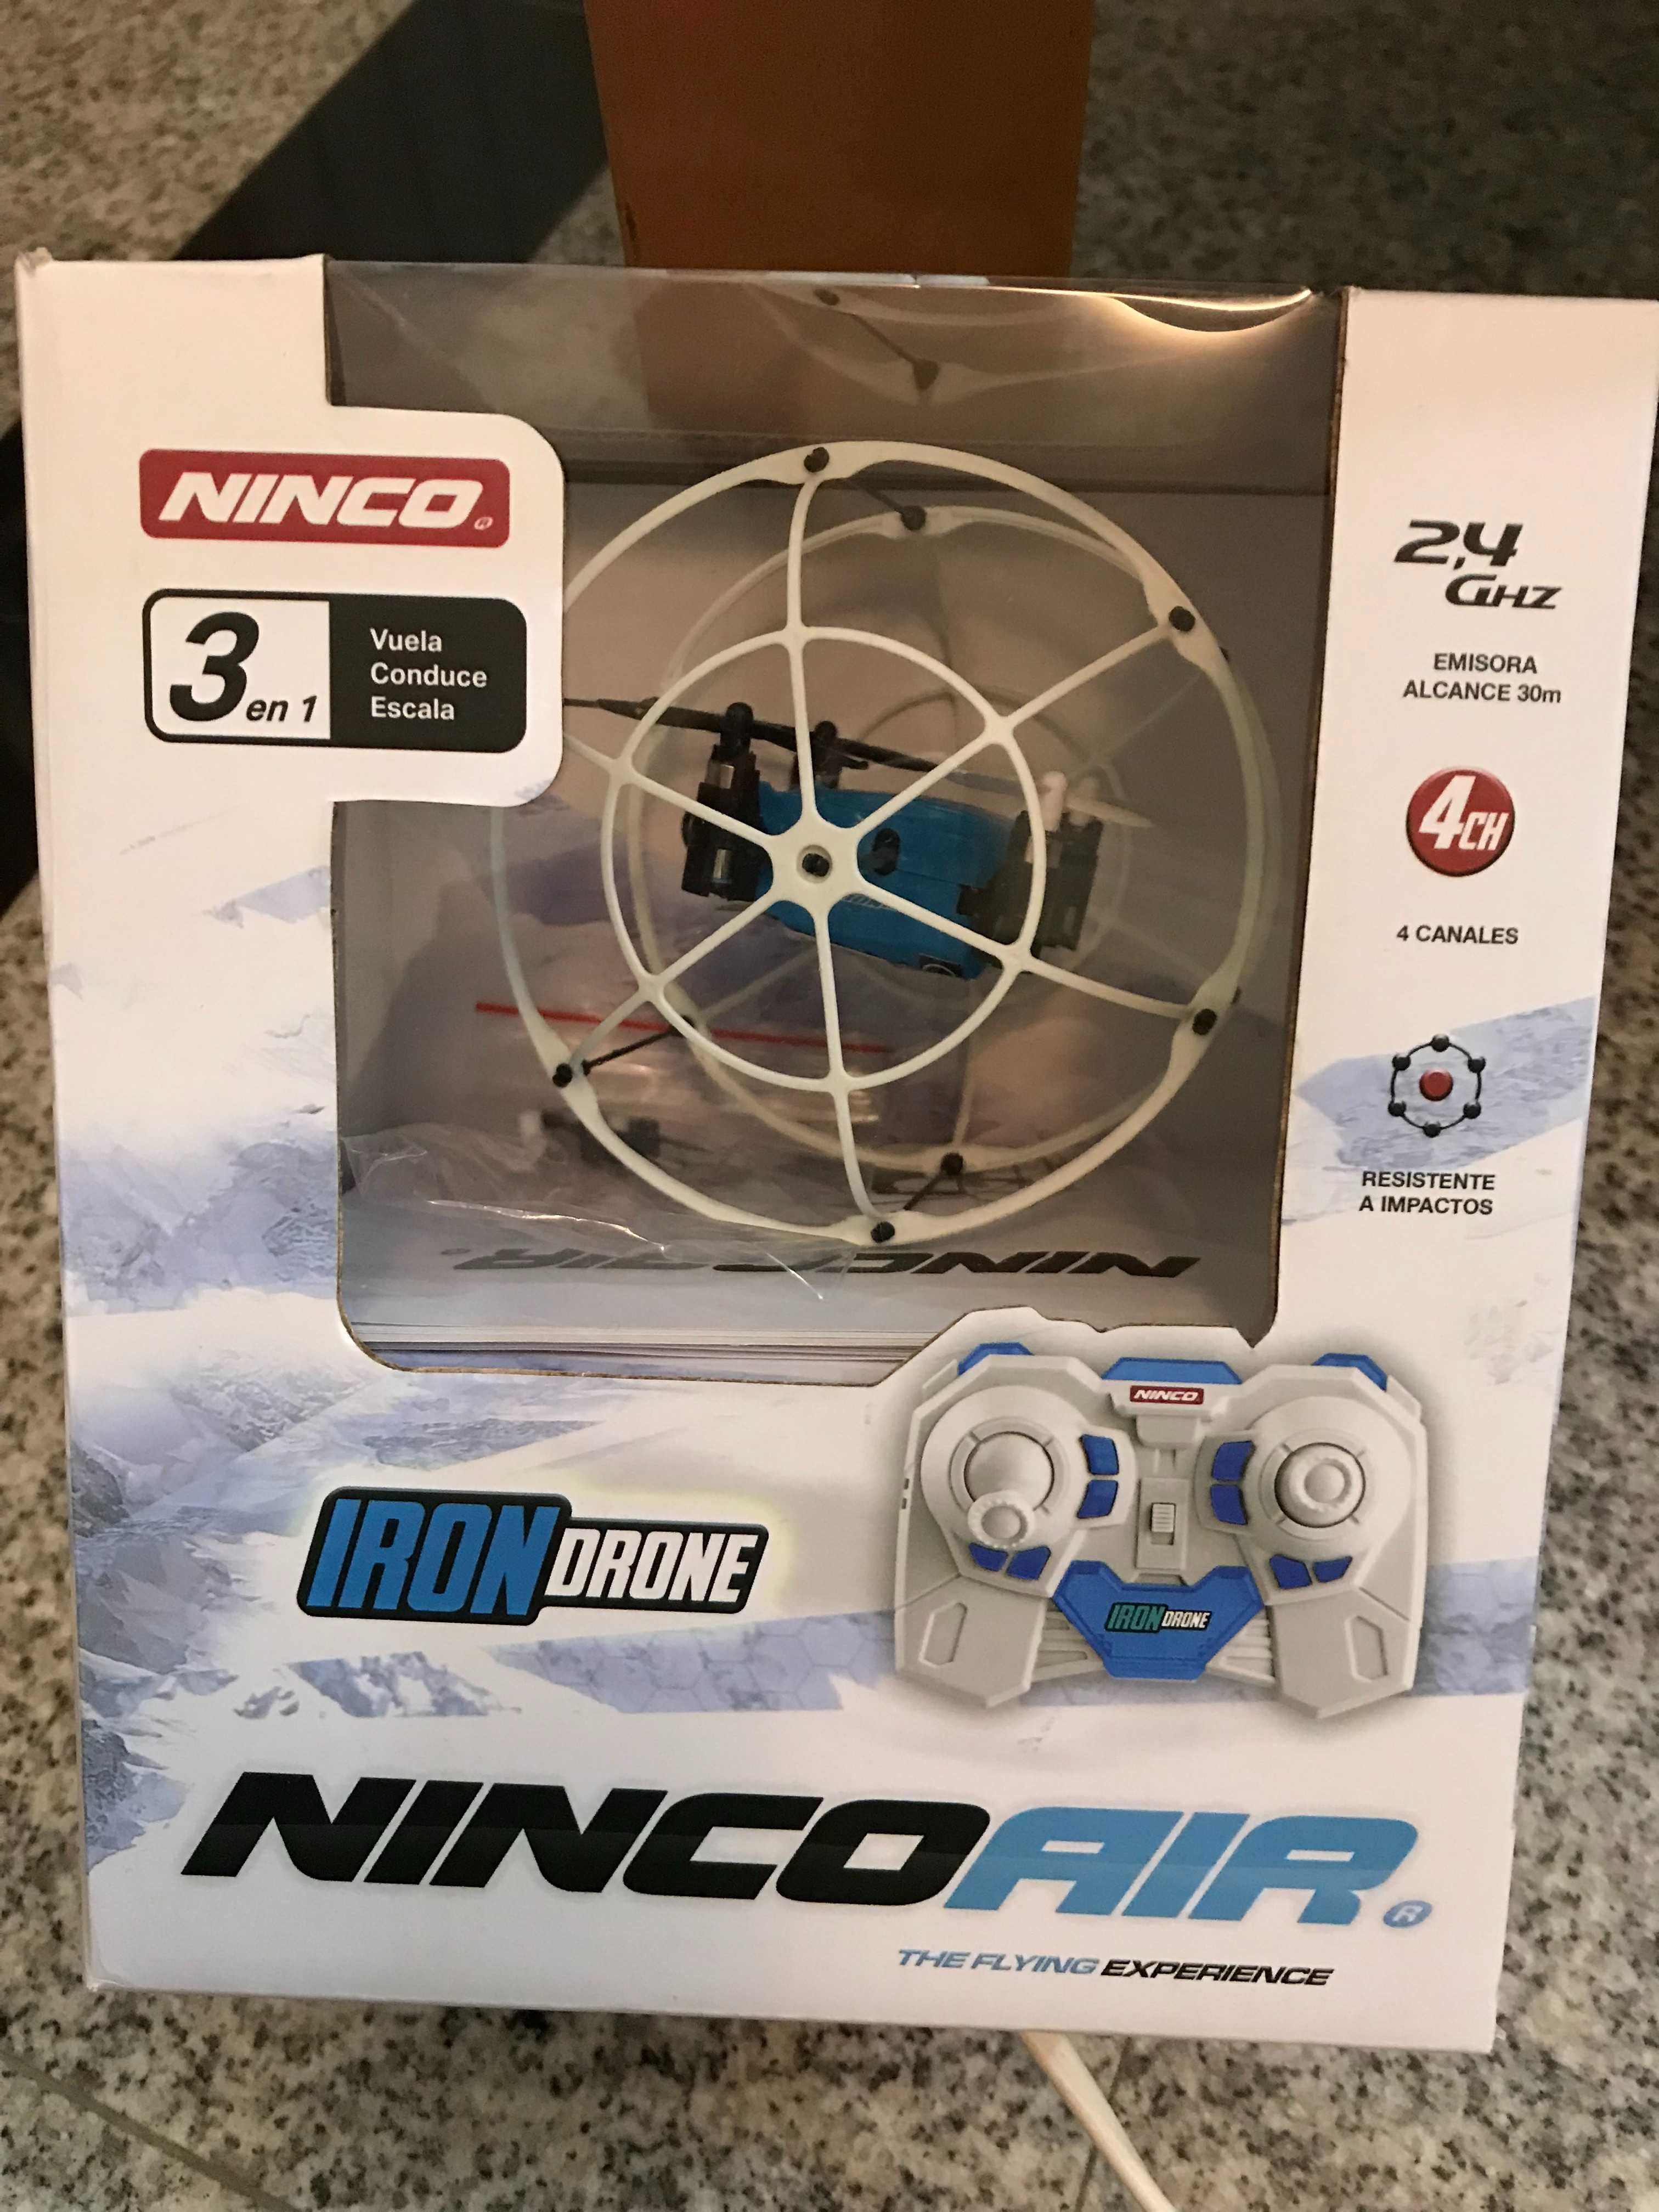 Iron Drone Ninco Air - NOVO